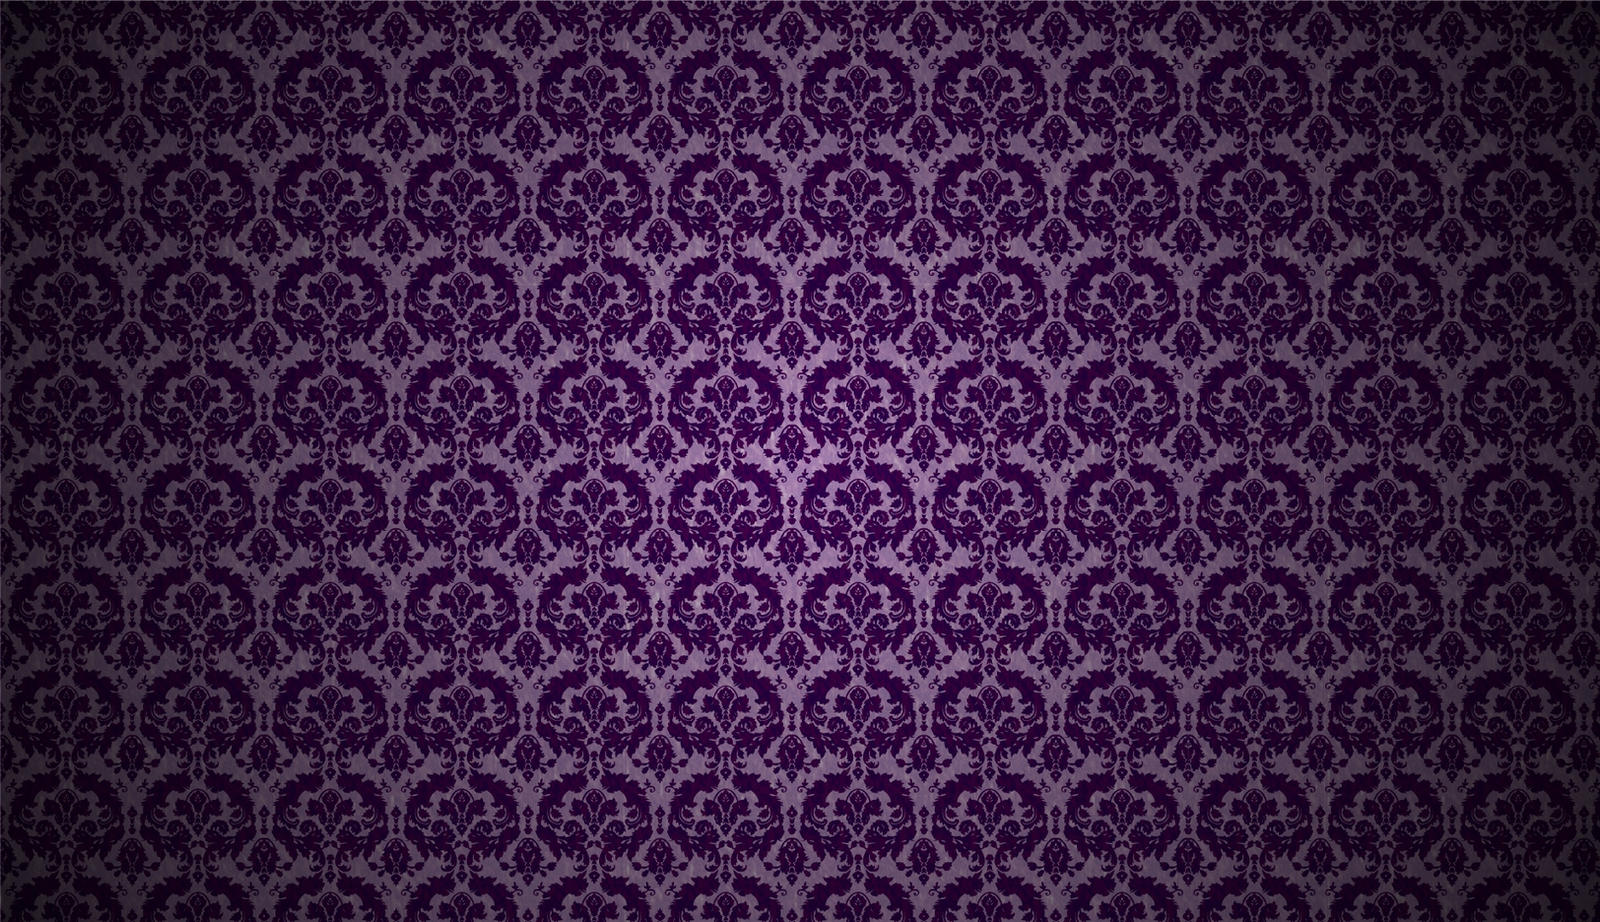 Purple Foil Damask Wallpaper by MT-Schorsch on DeviantArt